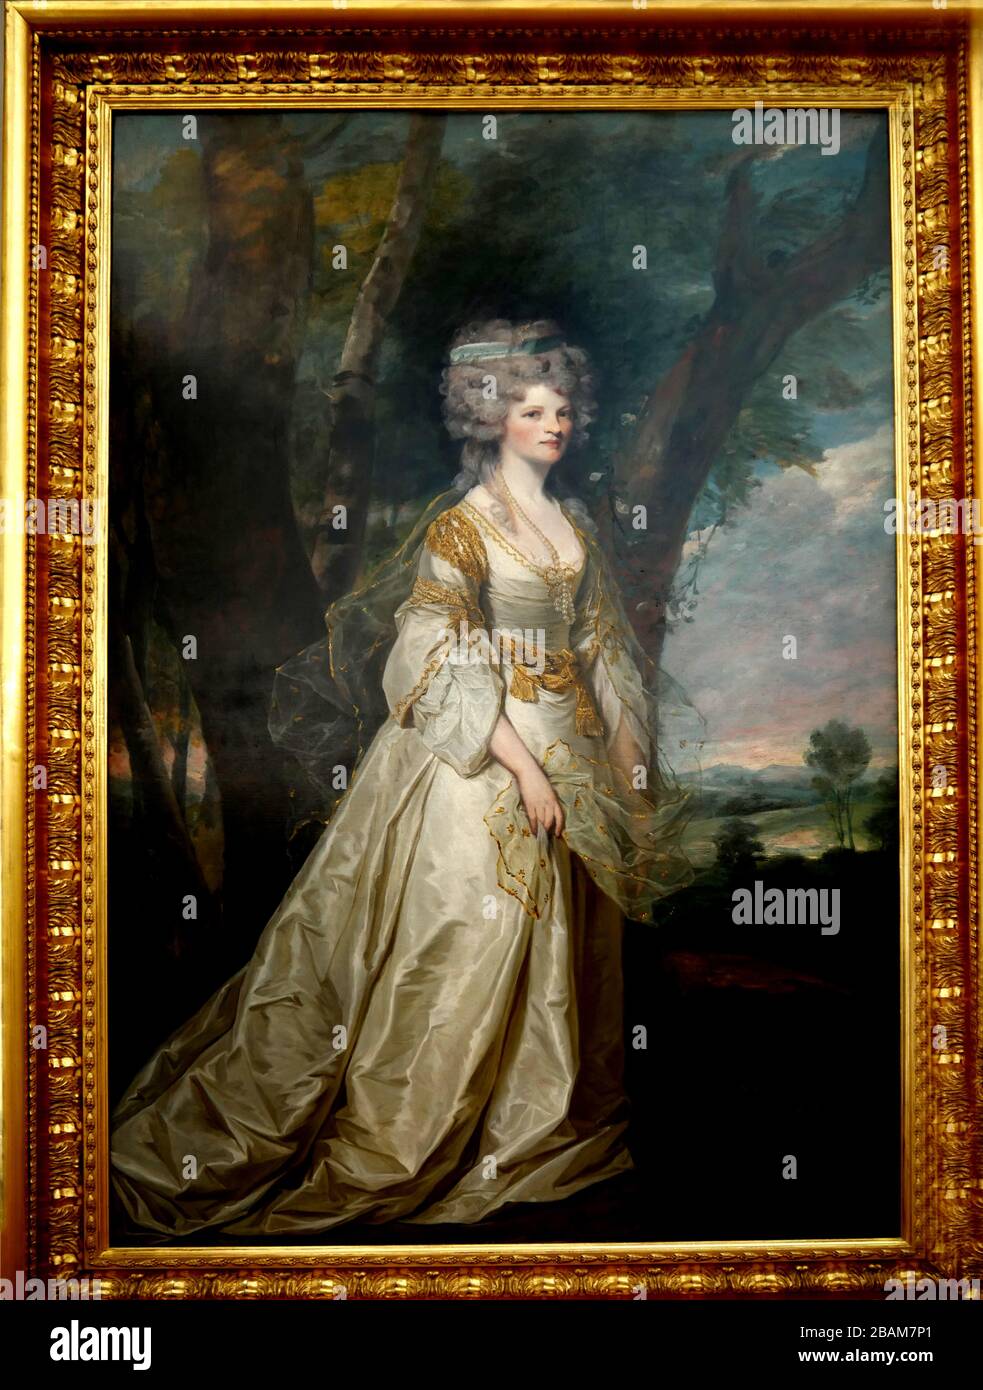 Lady Sunderland von Joshua Reynolds, eine Dame in der Gemaldegalerie, die sie in einer Chiffon-Schal und einer reichen Seidengarbe ziert und in eine "ideale" Landschaft gestellt hat. Stockfoto